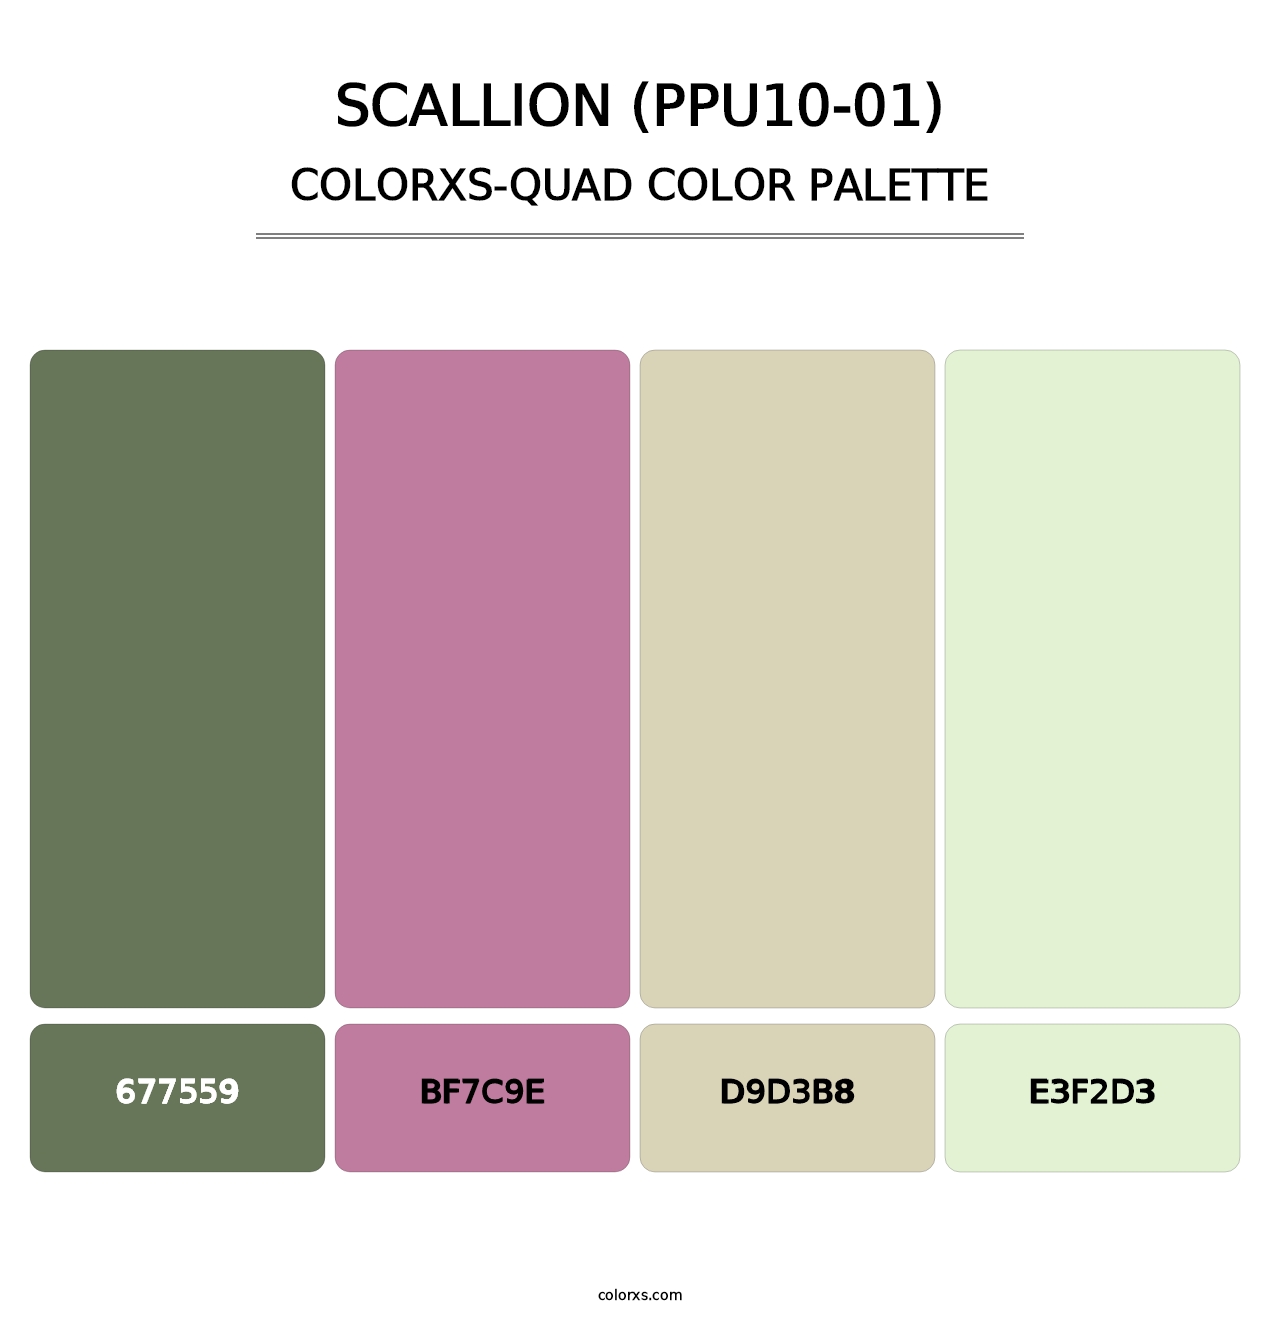 Scallion (PPU10-01) - Colorxs Quad Palette